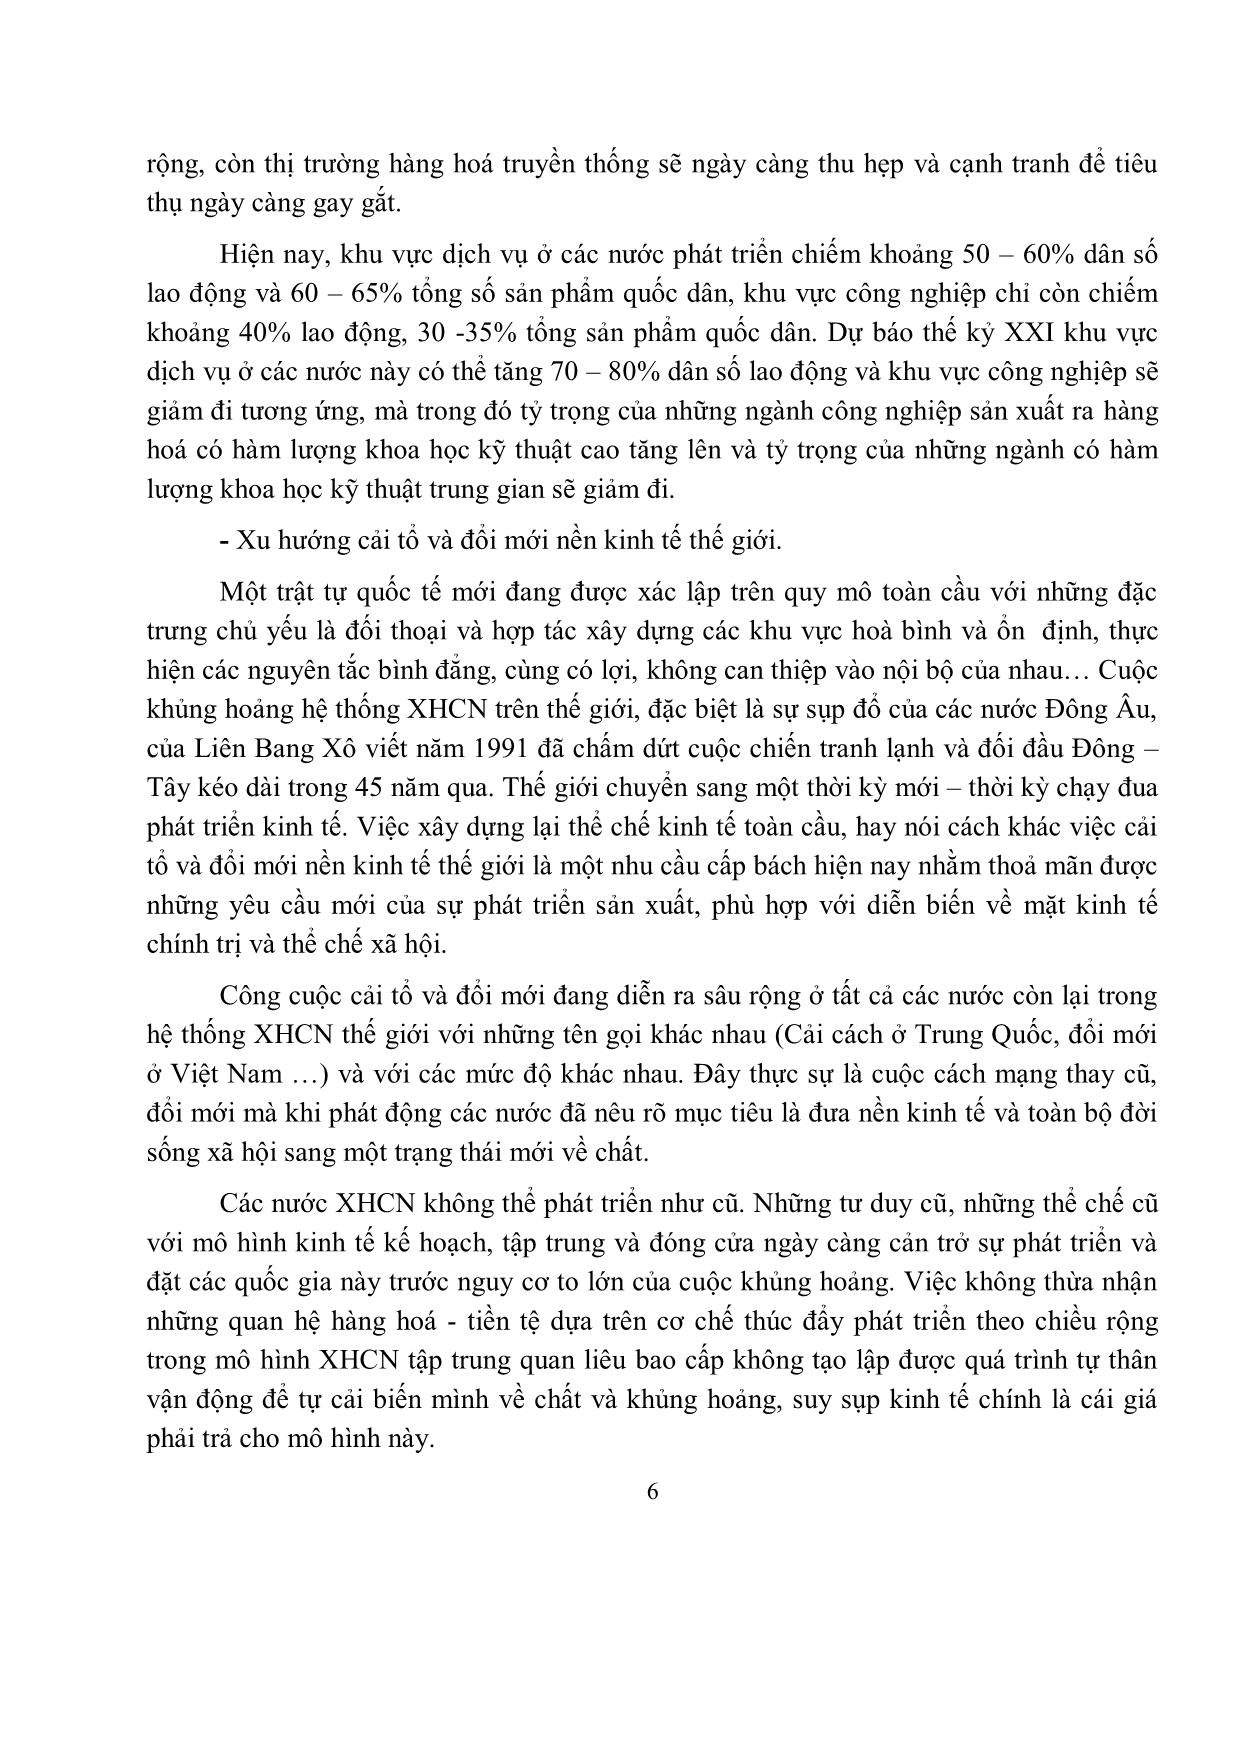 Bài giảng Địa lý kinh tế - Trần Thị Minh Châu trang 7